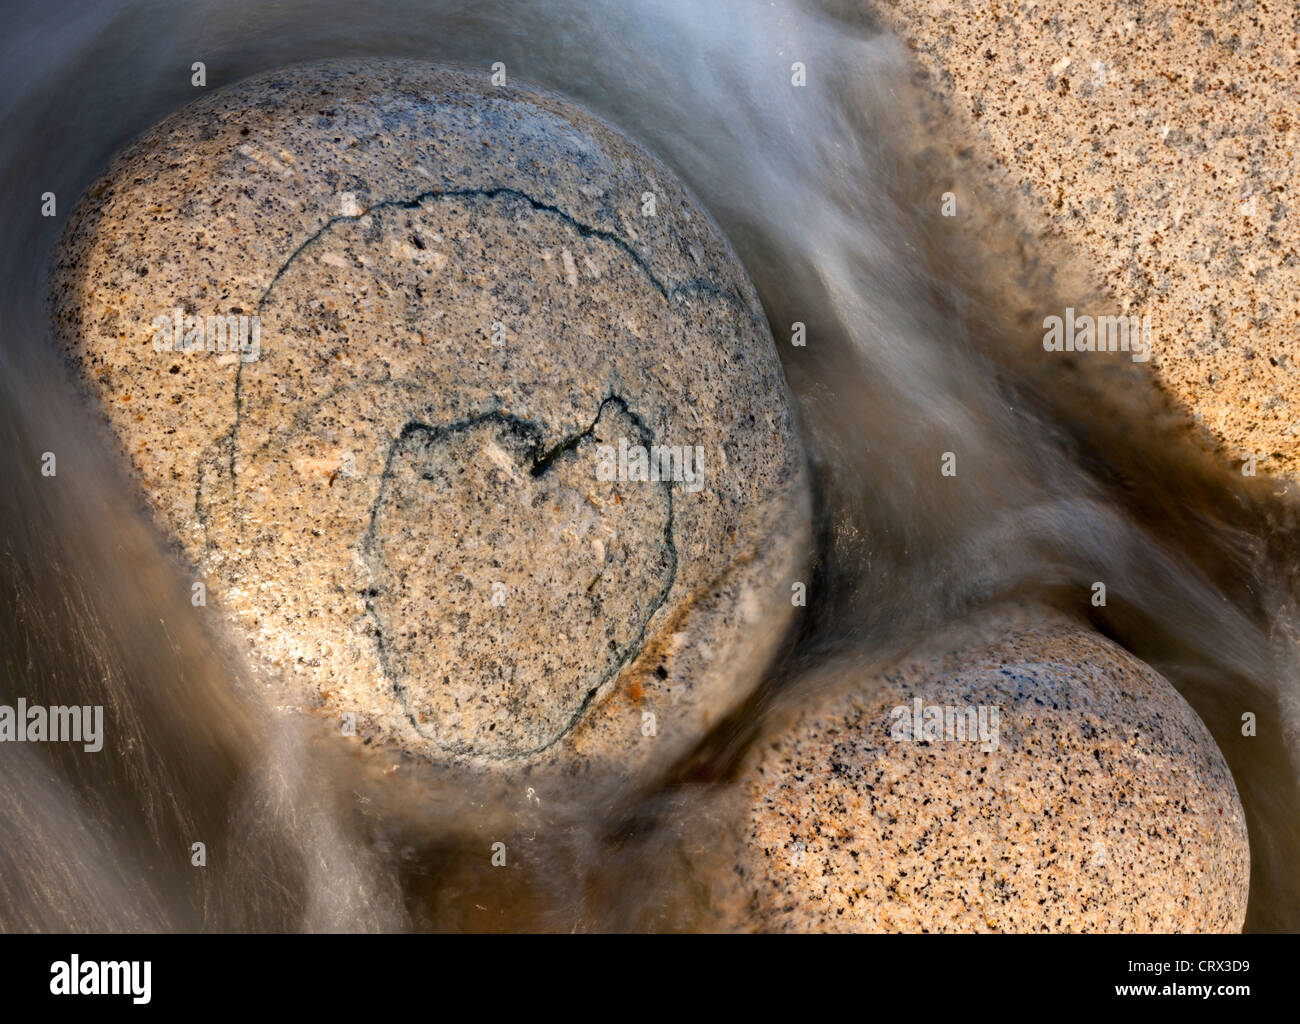 Motif en forme de cœur sur un bloc de granite circulaire, Porth Nanven, Cornwall, Angleterre. Printemps (avril) 2012. Banque D'Images